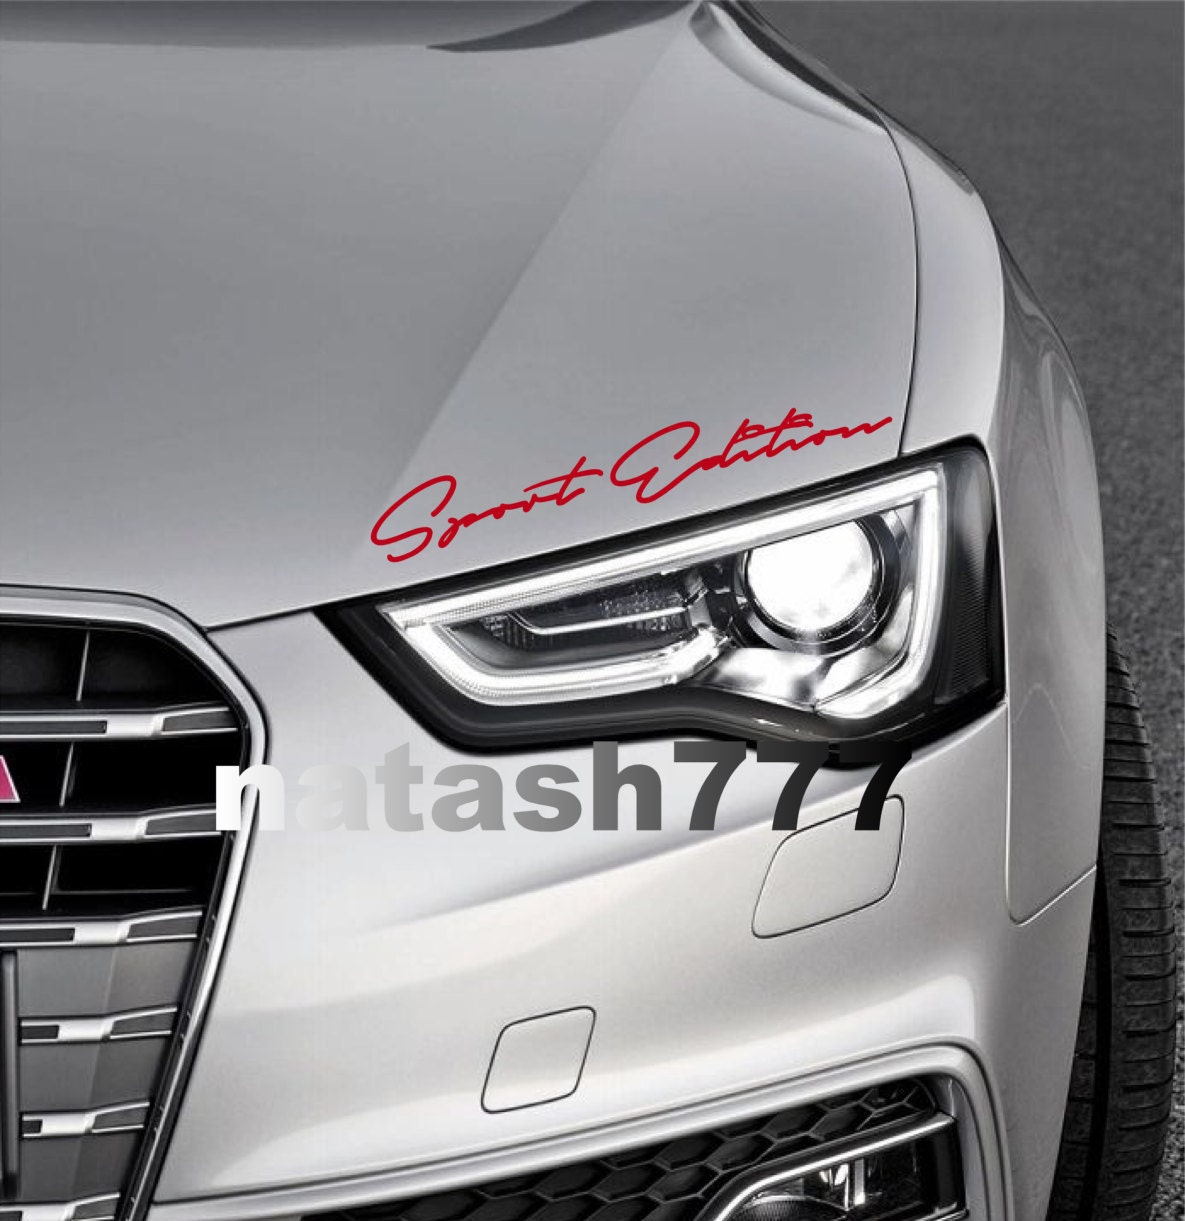 Audi A3 Quattro side stripes decal sticker set - N°.: 5164